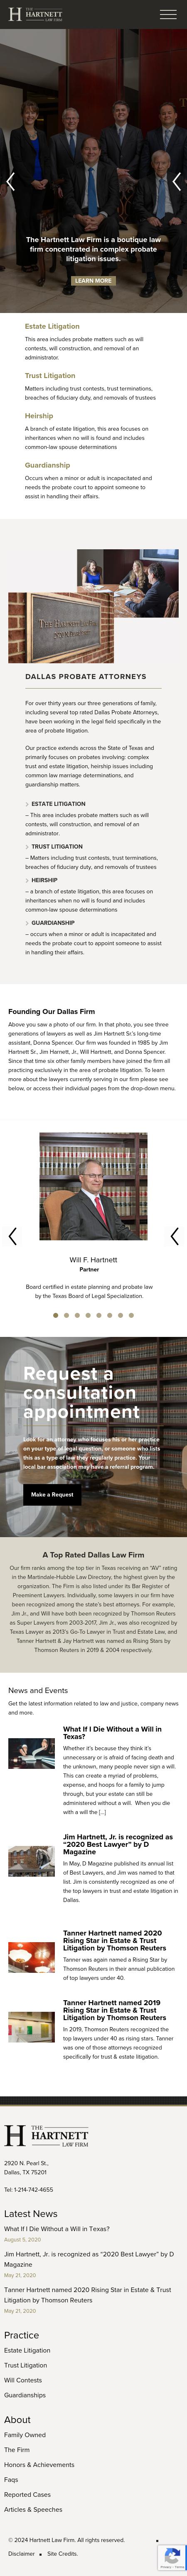 Hartnett Law Firm - Dallas TX Lawyers